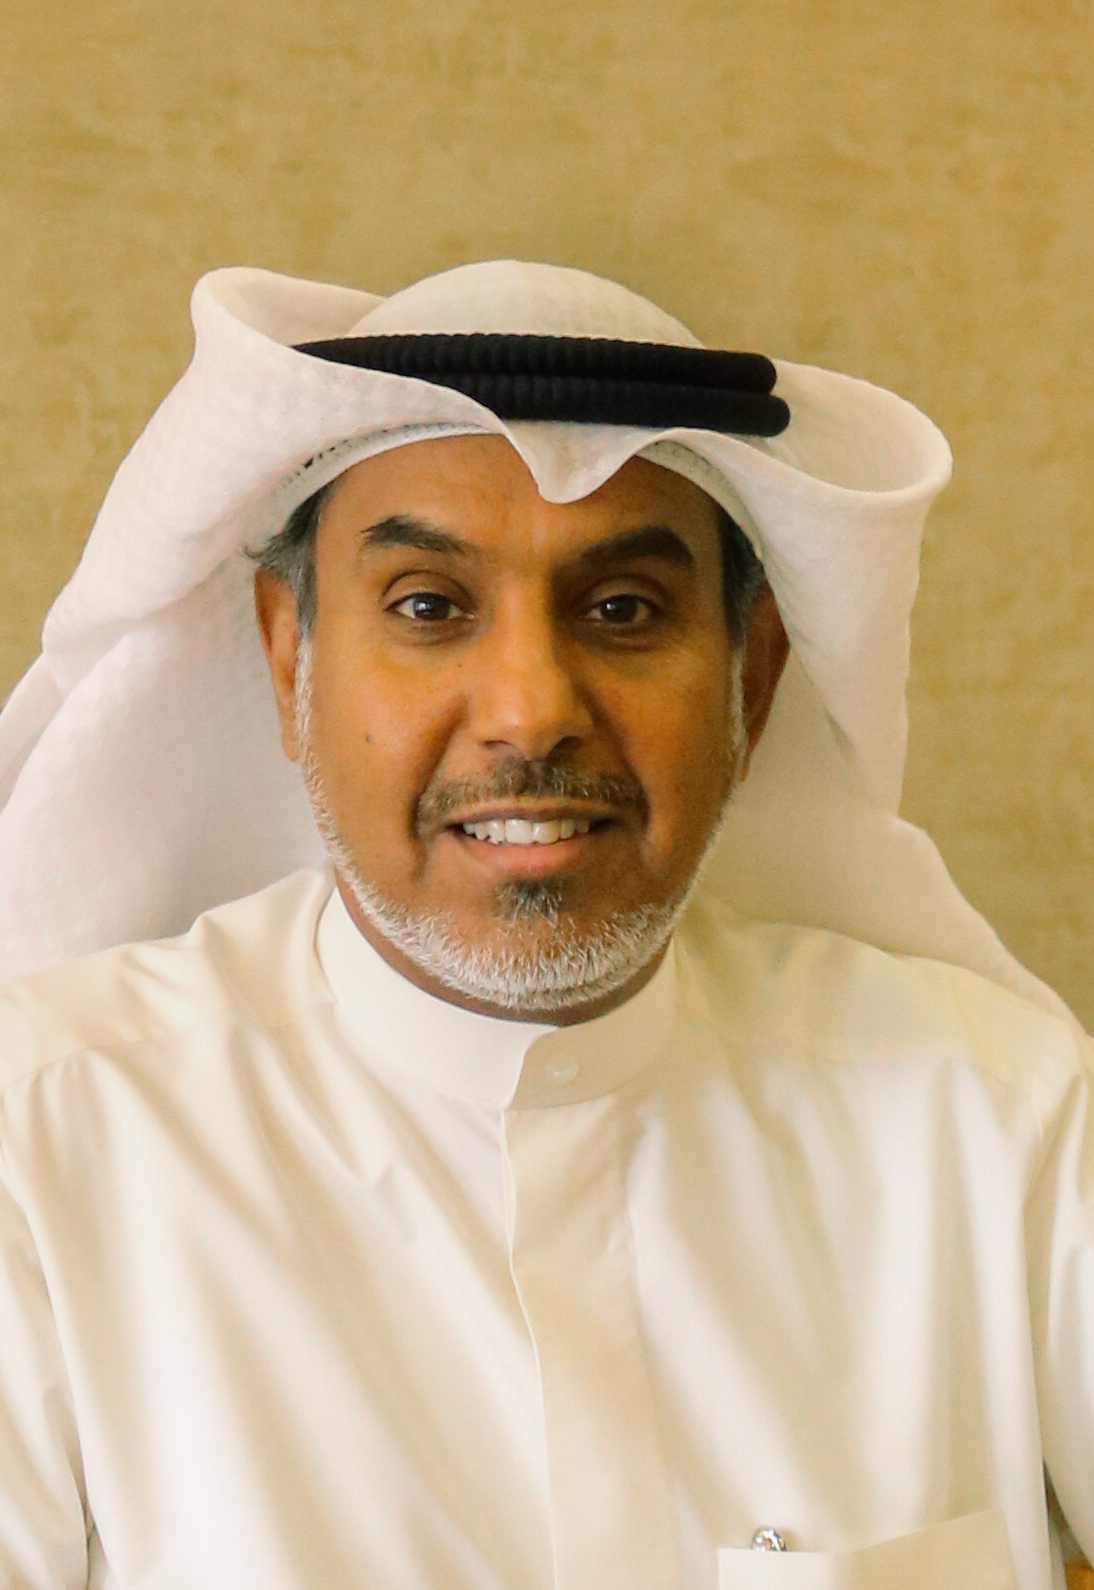 Minister of Awqaf Fahad Al- Shula